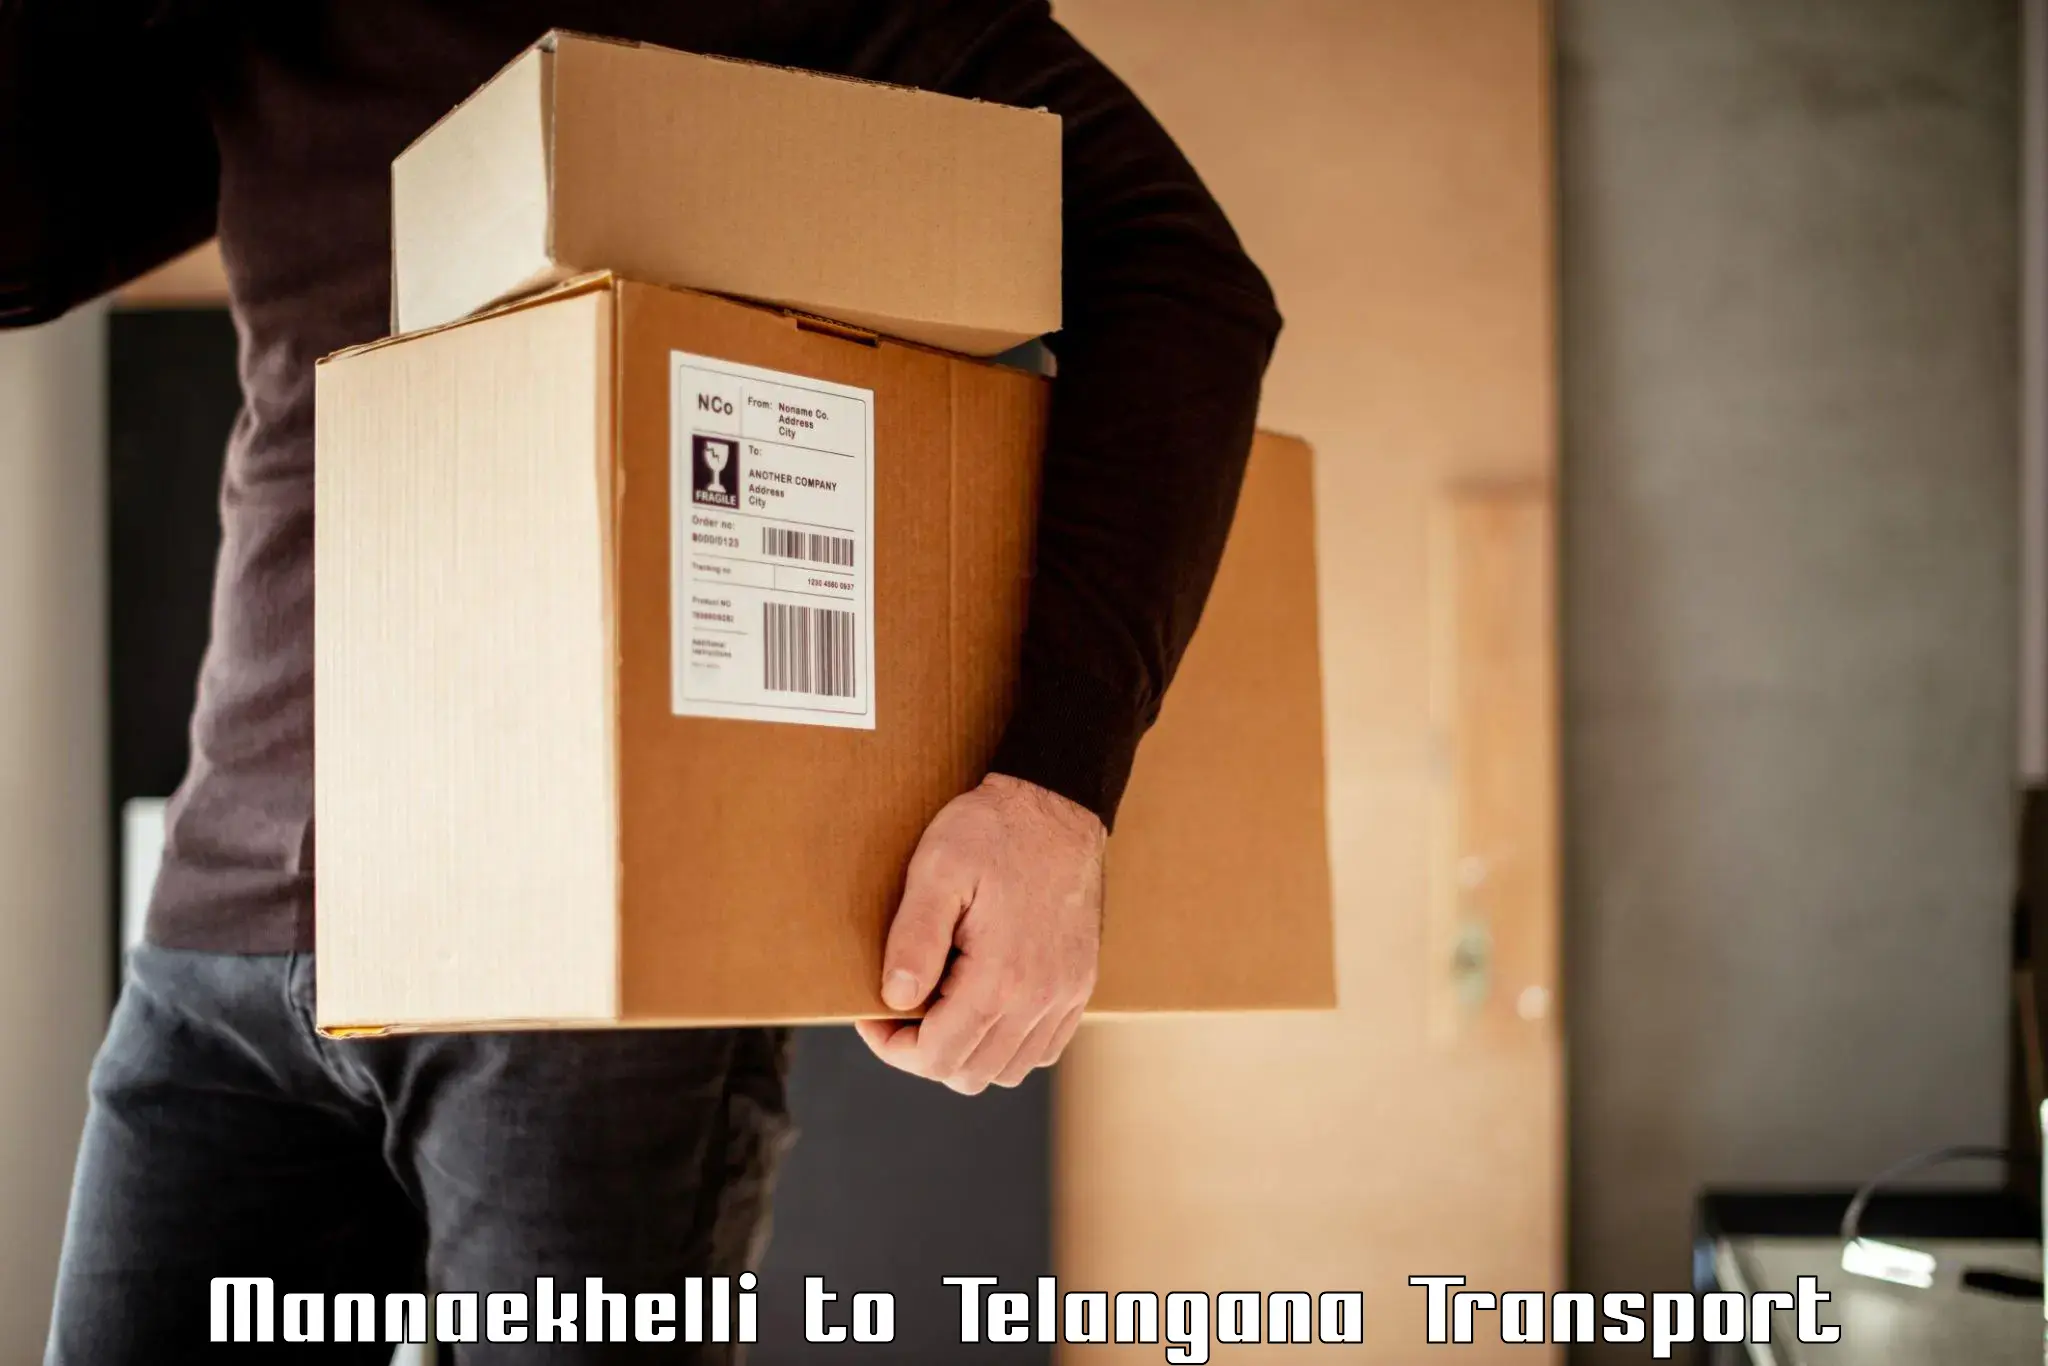 Cargo transportation services Mannaekhelli to Mudigonda